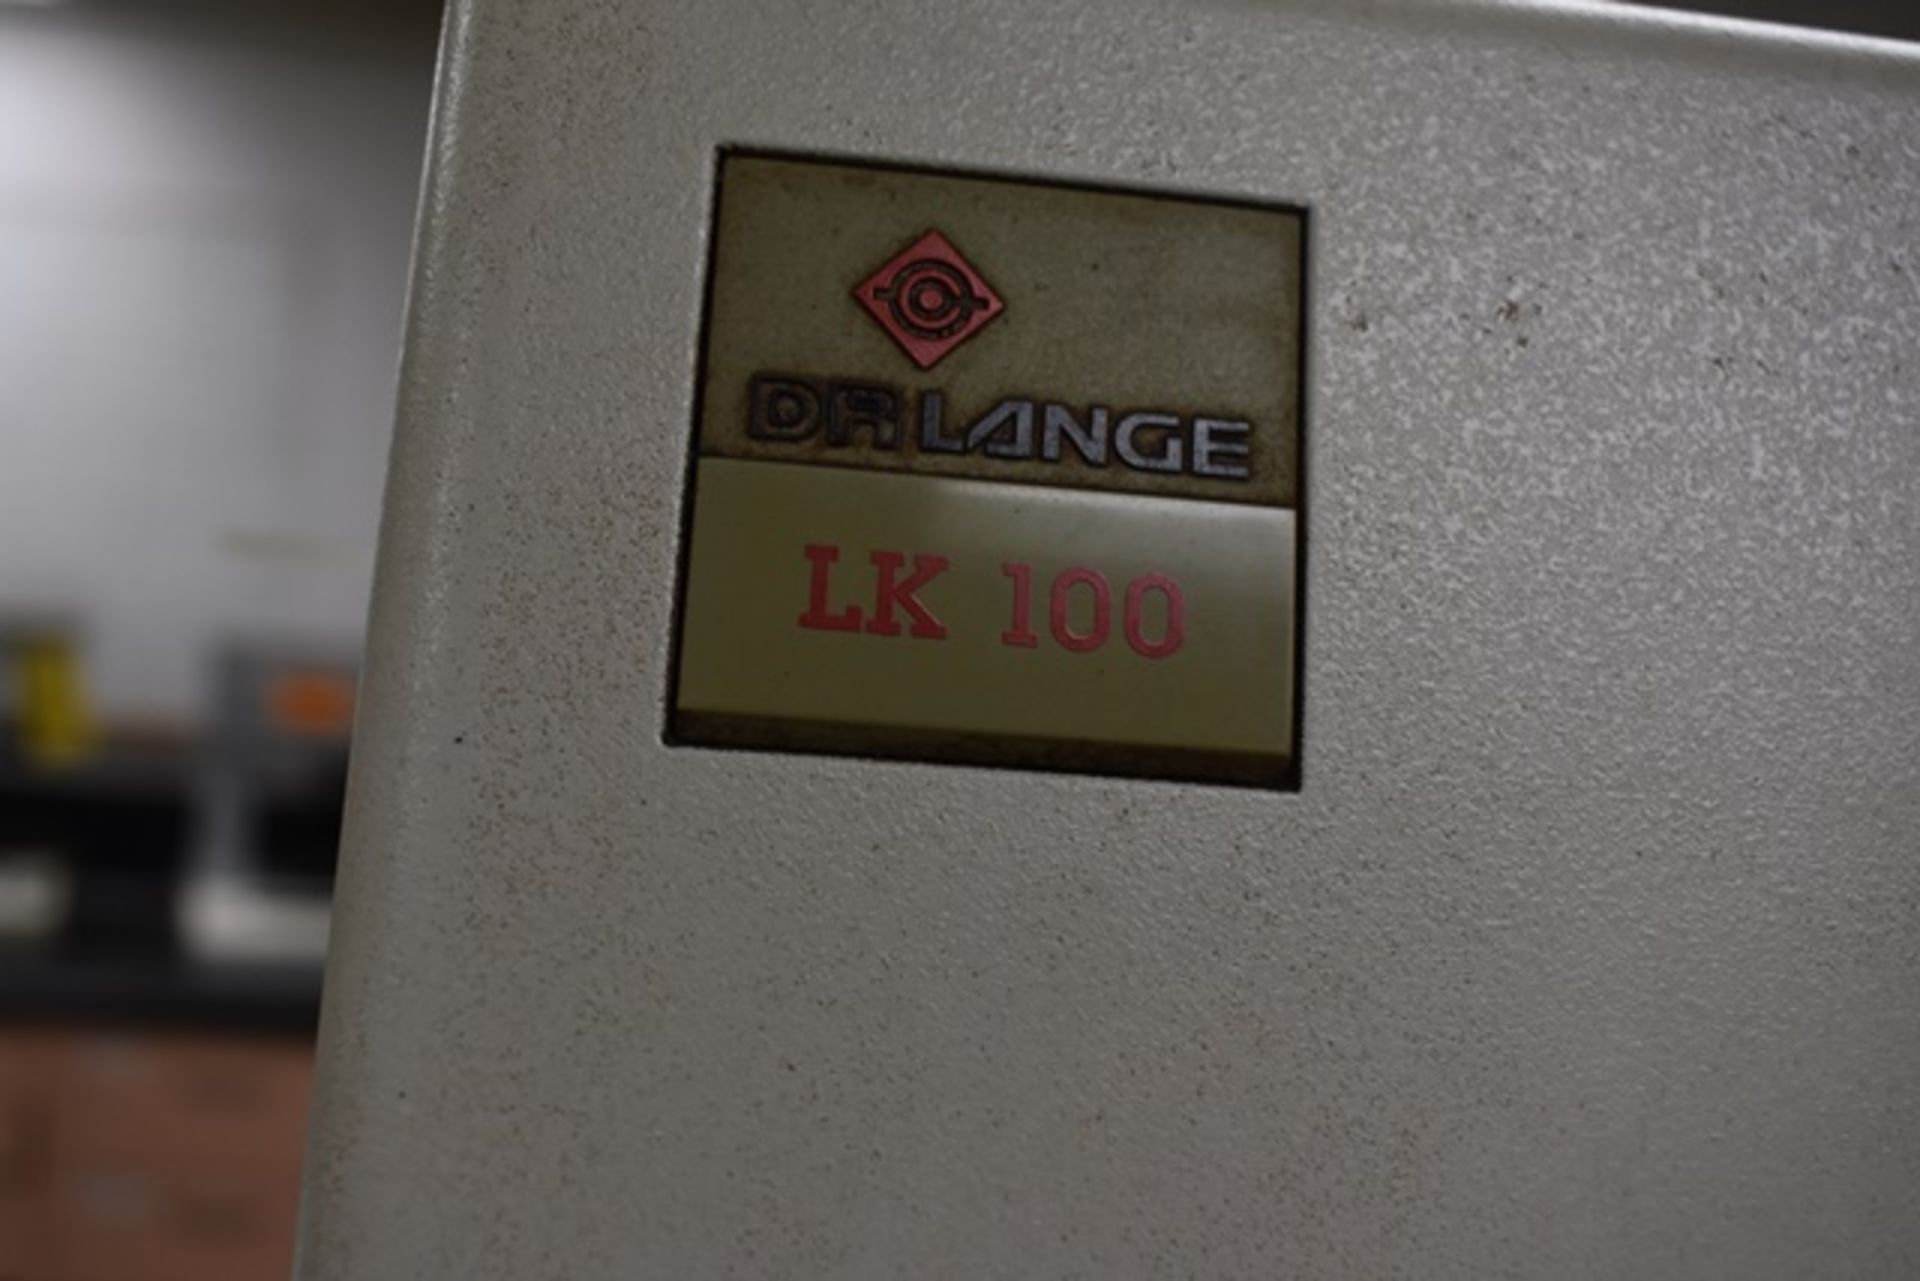 Dr Lange tester, mod. LK100, s/n LYY401 - Image 2 of 2